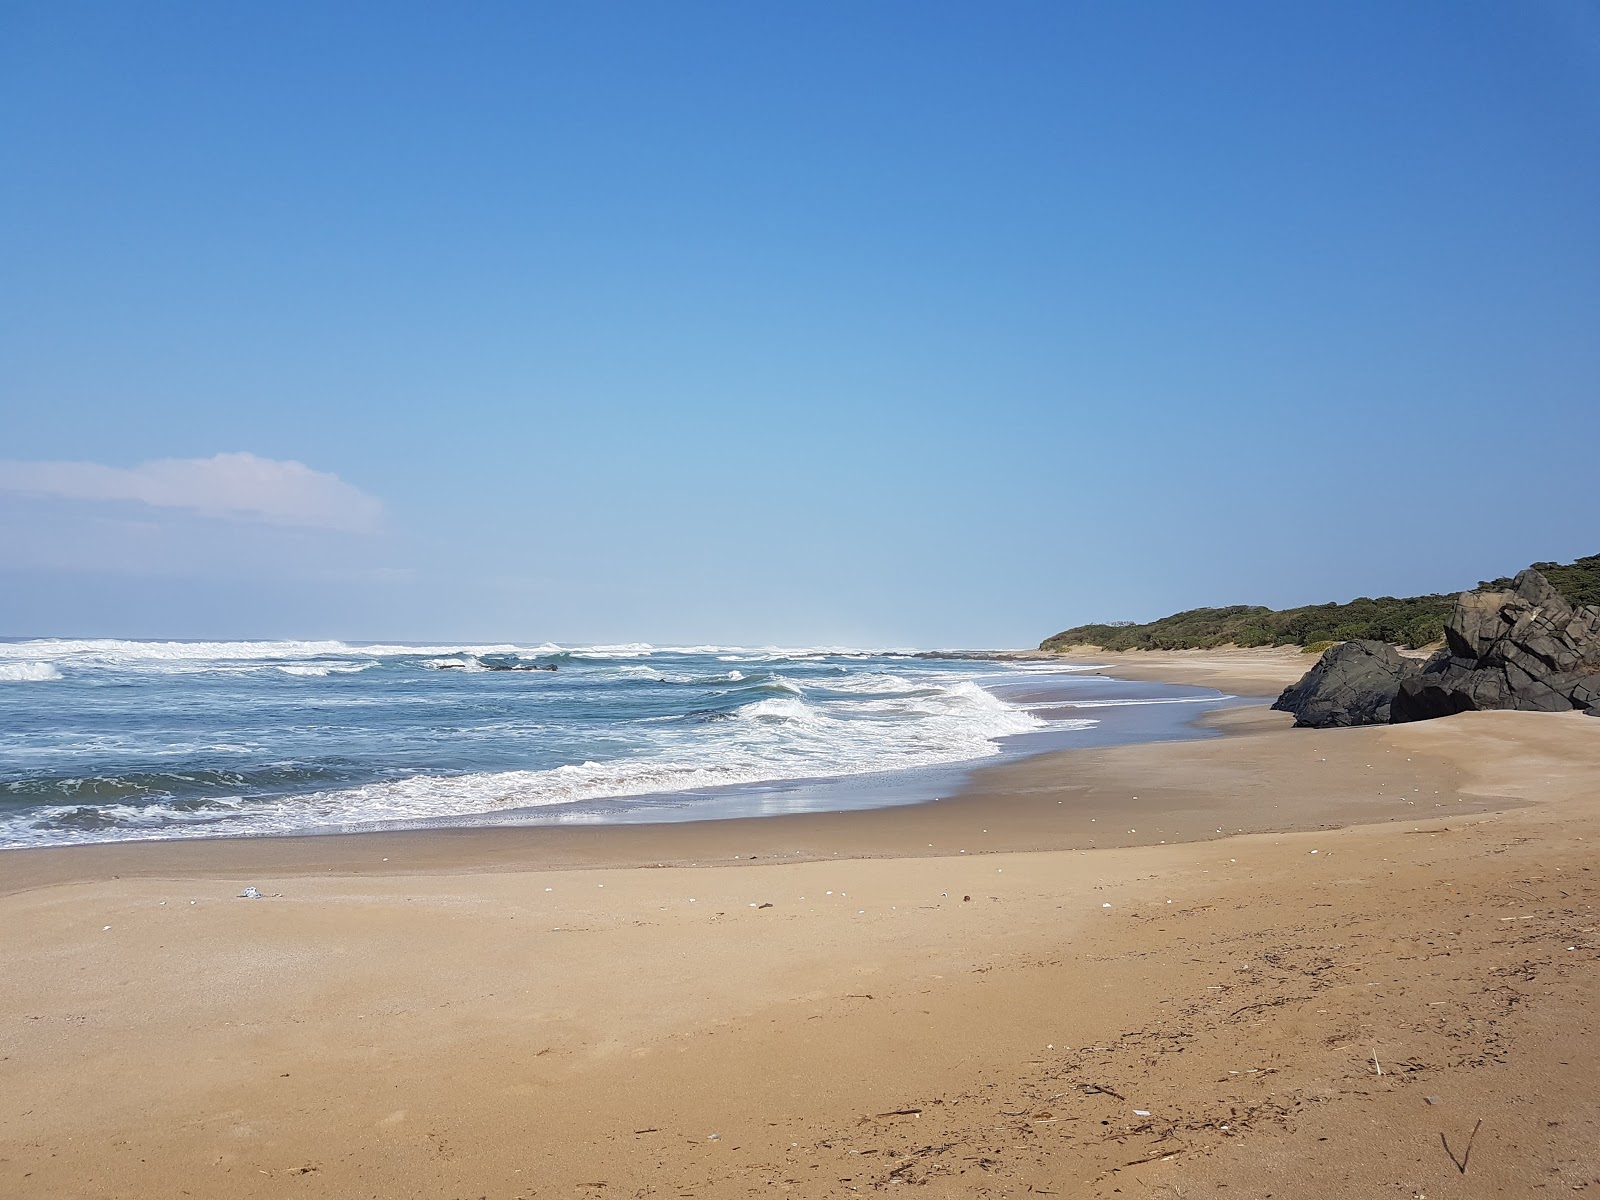 Foto di Xhora beach con una superficie del sabbia fine e luminosa